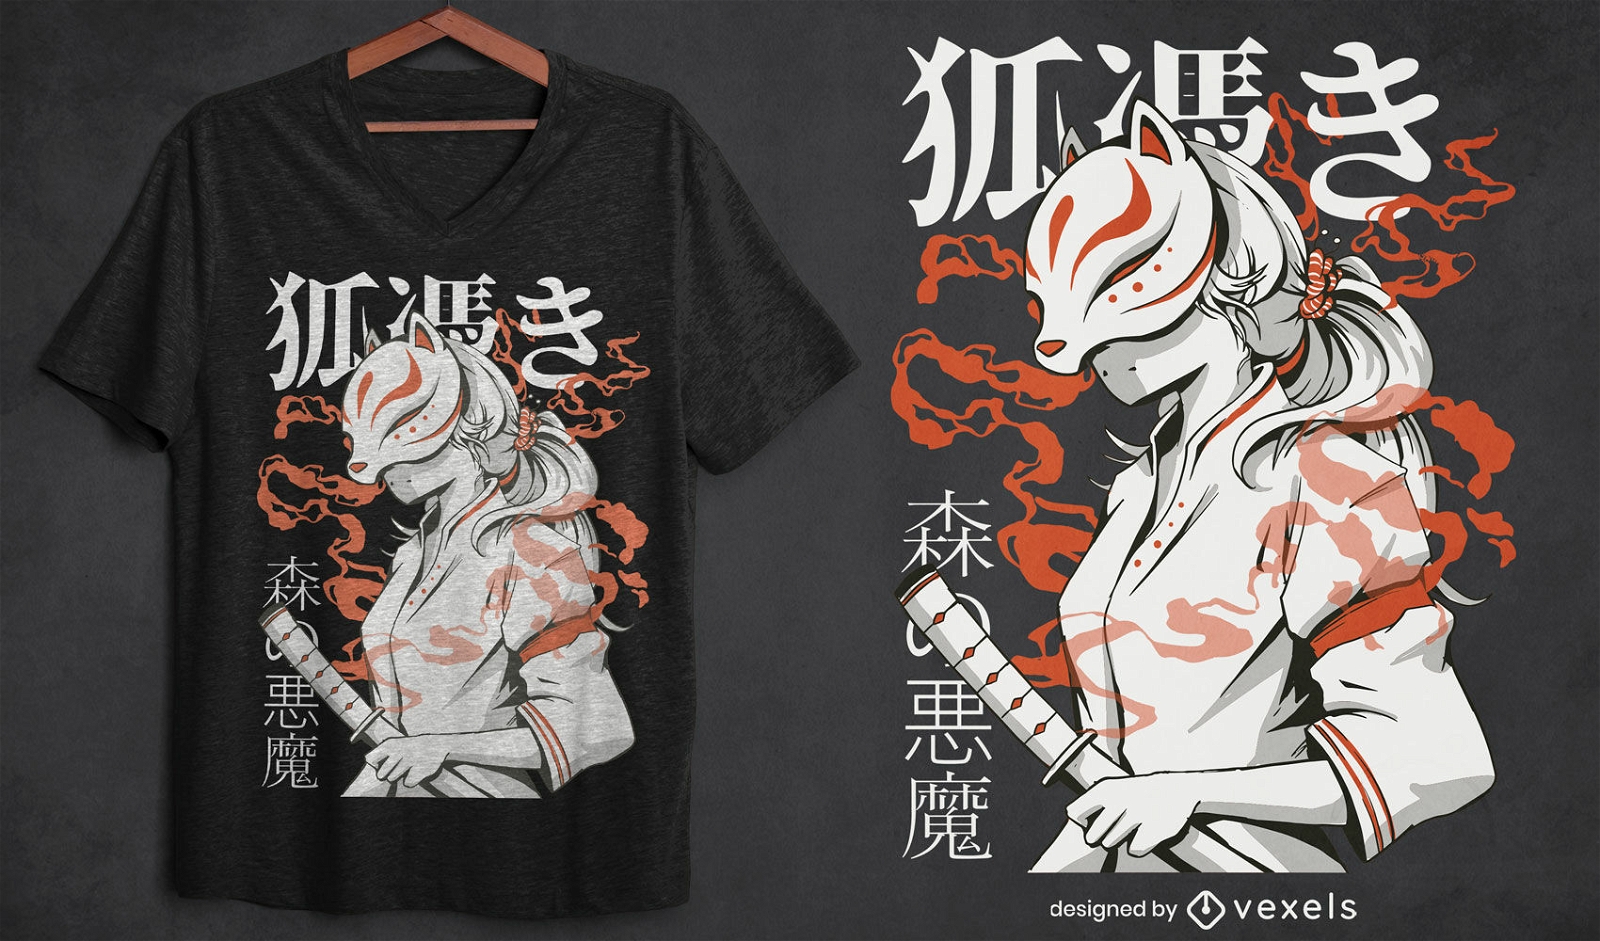 Dise?o de camiseta de criatura japonesa kitsune.